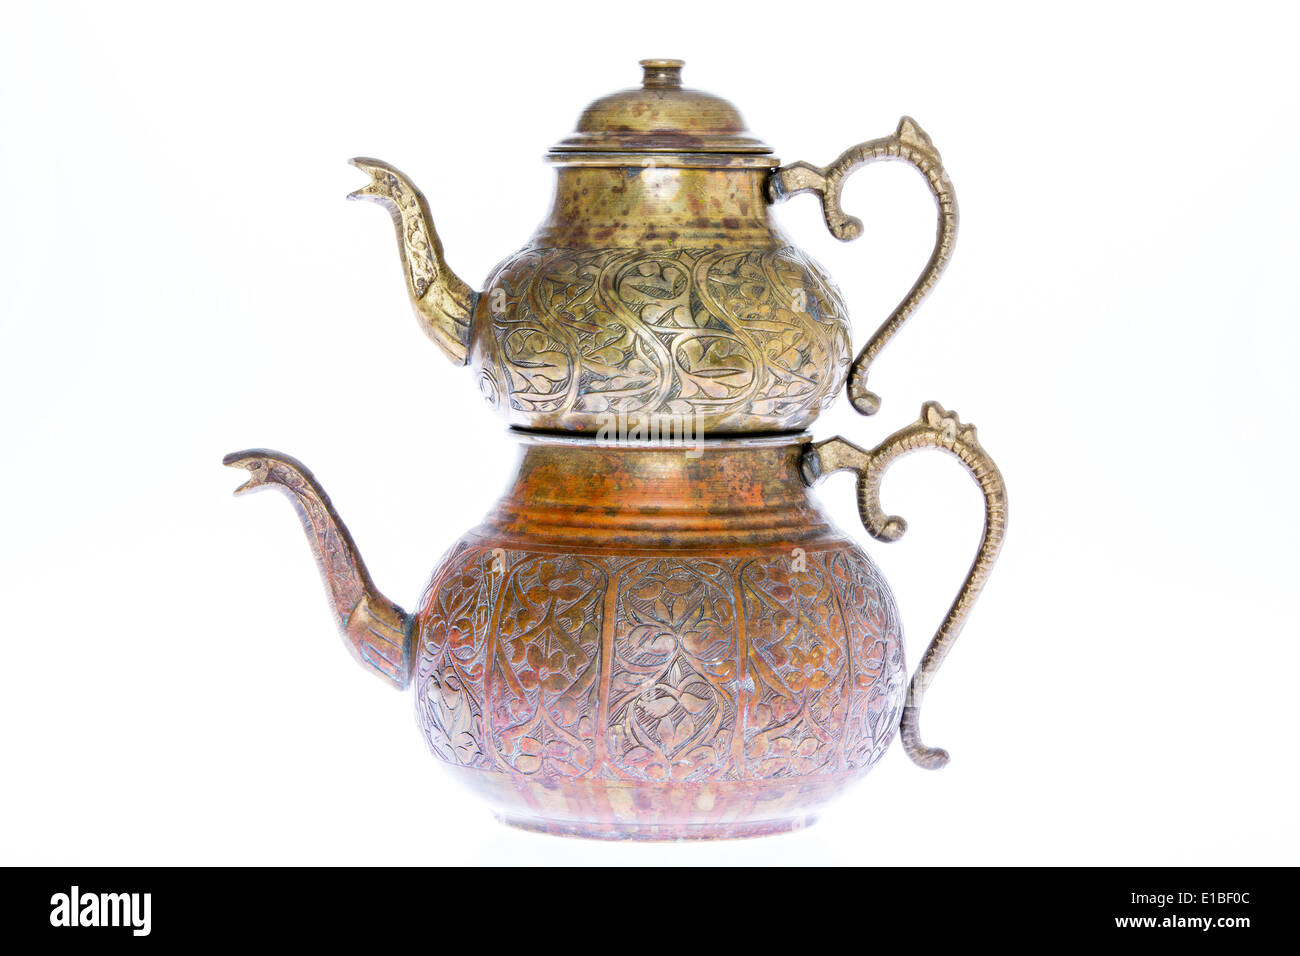 Isolierte antiken gravierten Kupfer türkische Teekanne mit doppelt  gestapelt Wasserkocher Tee gebraut in einem während heißes Wasser  ermöglicht Stockfotografie - Alamy